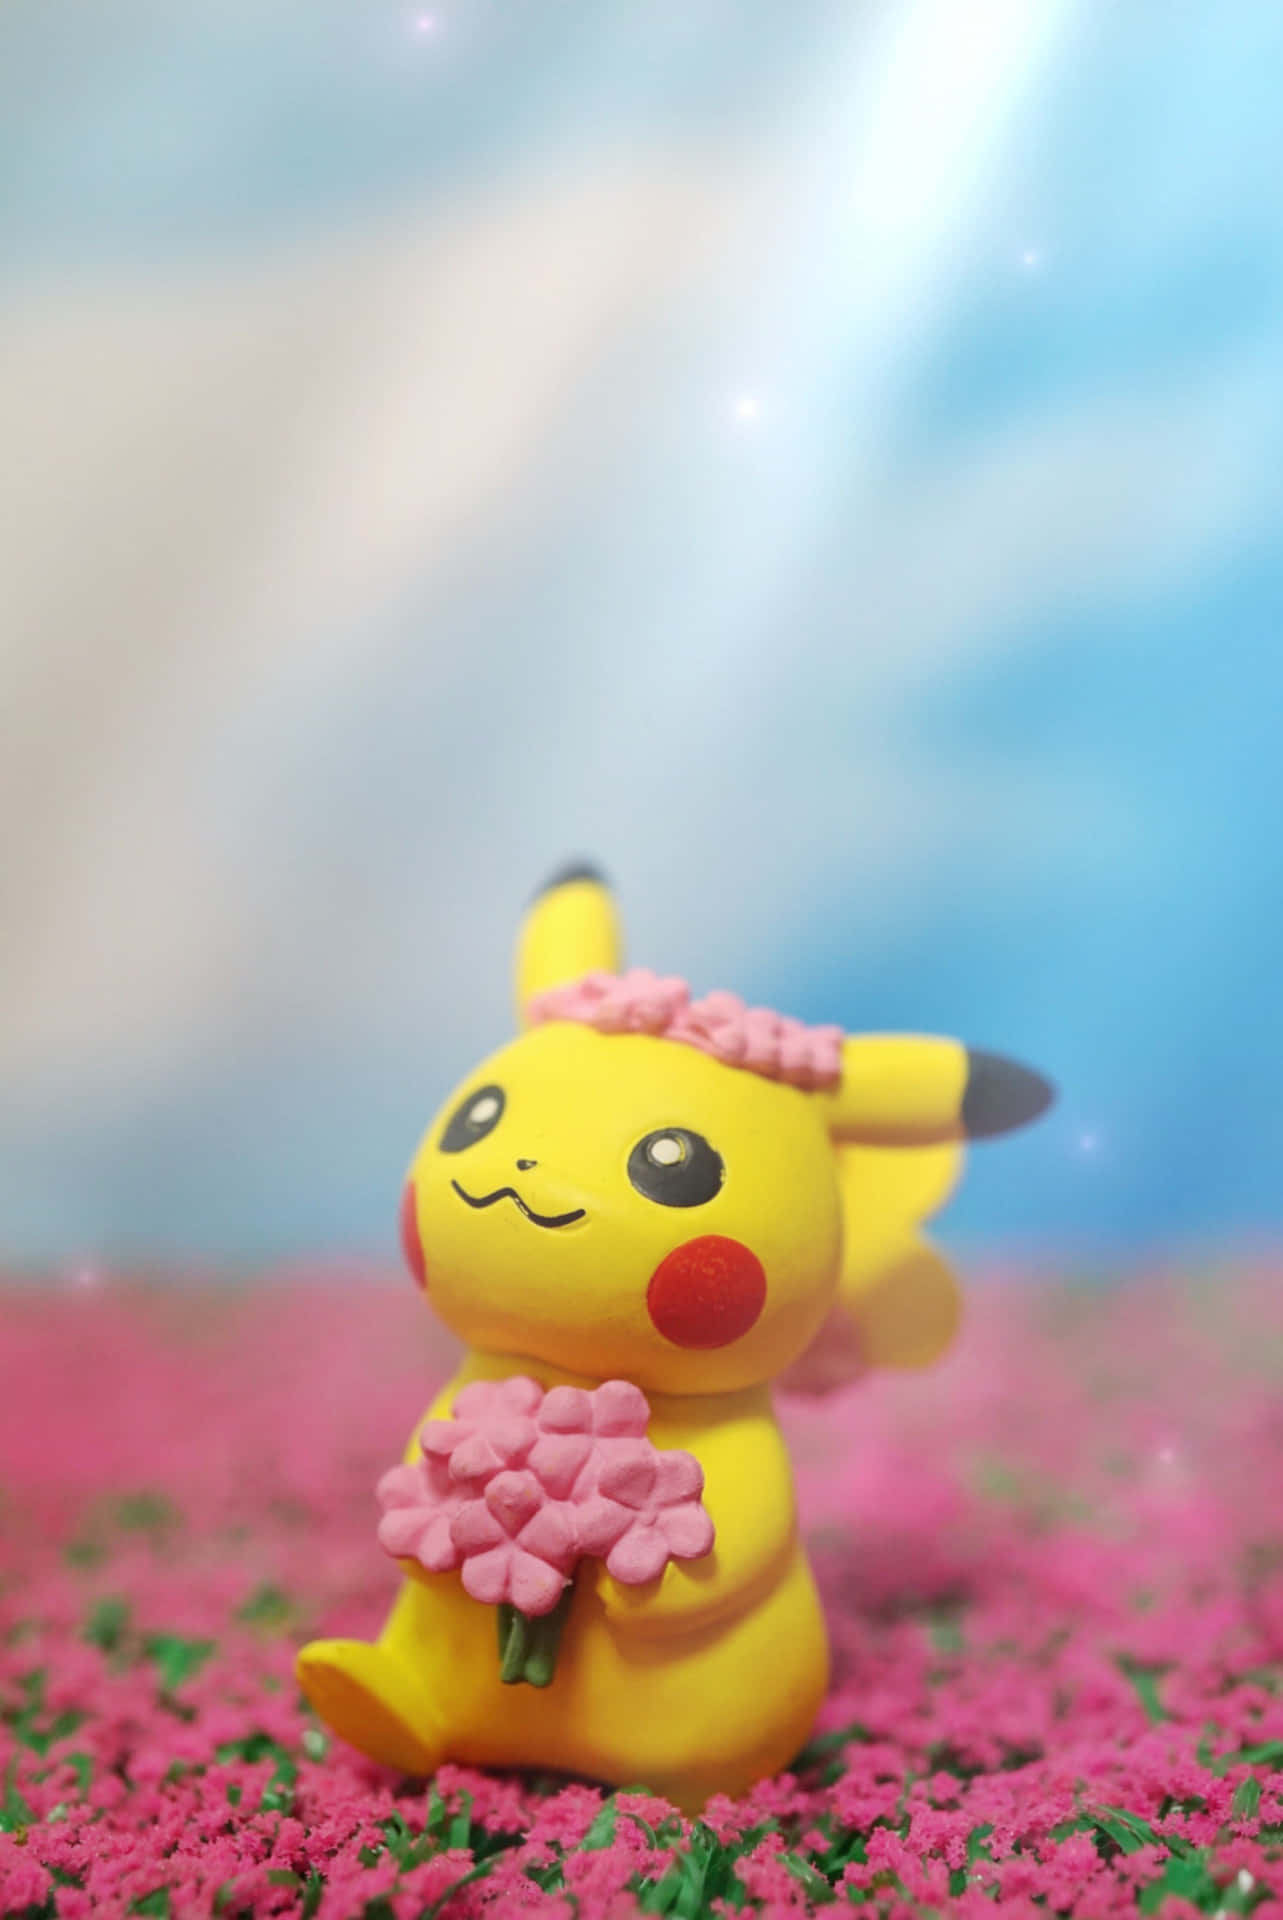 Pokemon Toys 2738 X 4096 Wallpaper Wallpaper